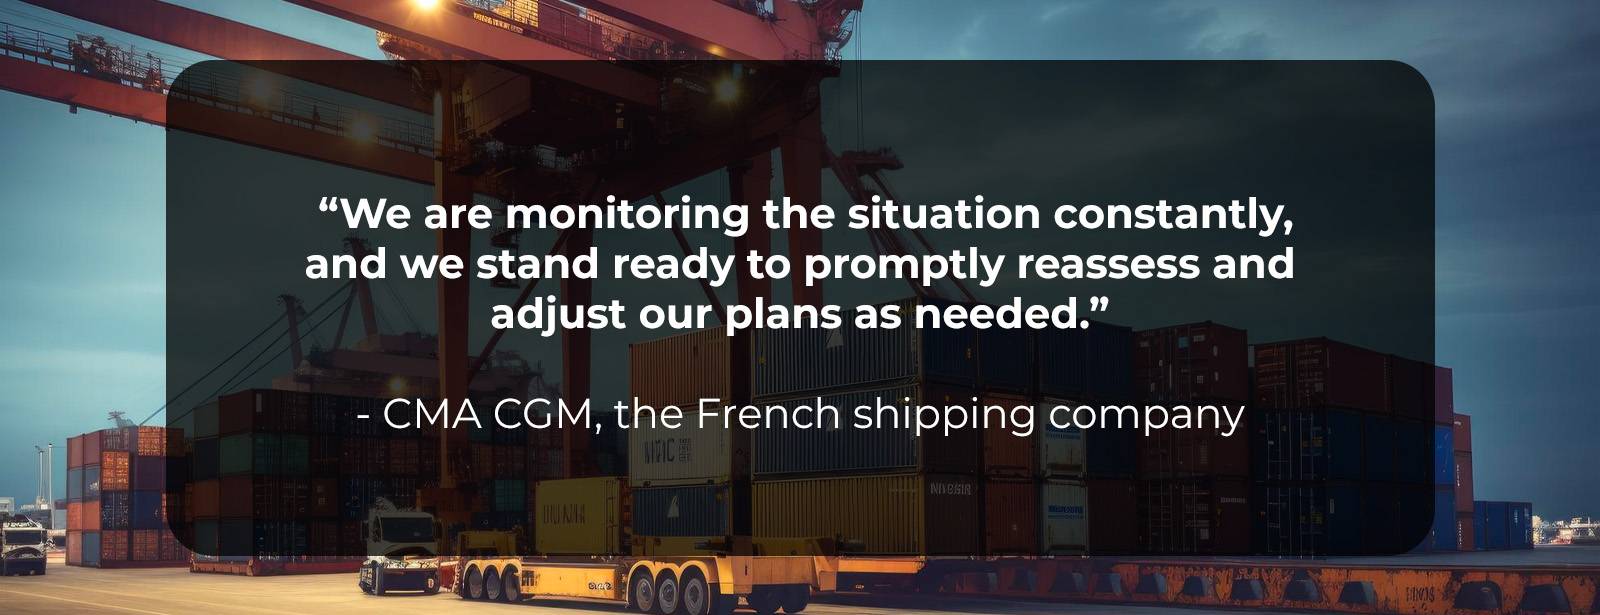 A hajózási társaságok nyilatkozatot tesznek közzé, miután a Vörös-tenger útvonalával kapcsolatos aggodalmak merültek fel